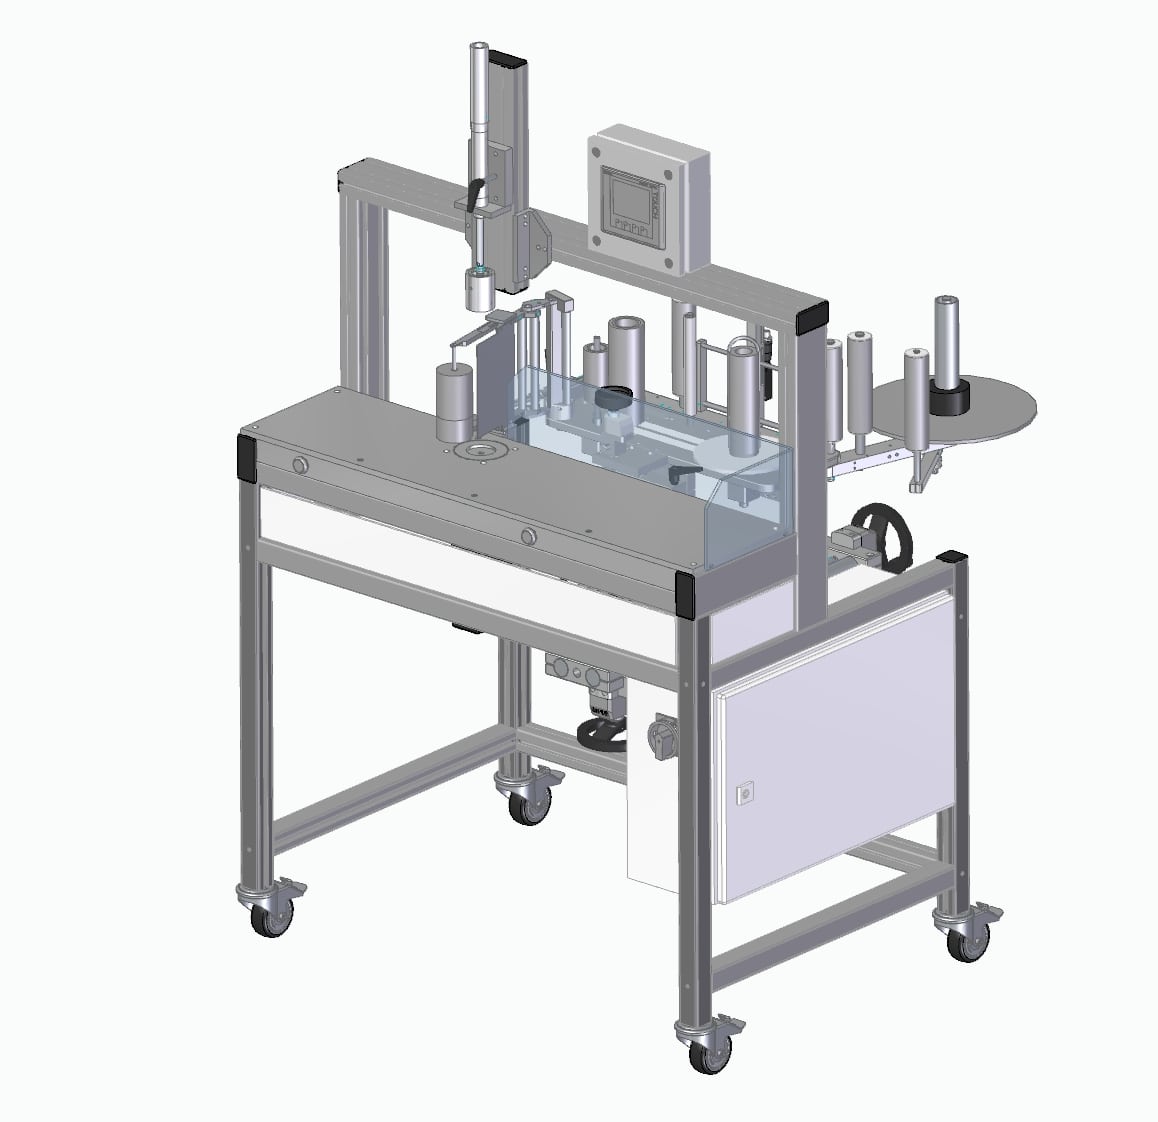 Beispiel einer individuell gefertigten, halbautomatischen Etikettiermaschine aus unserem Sortiment